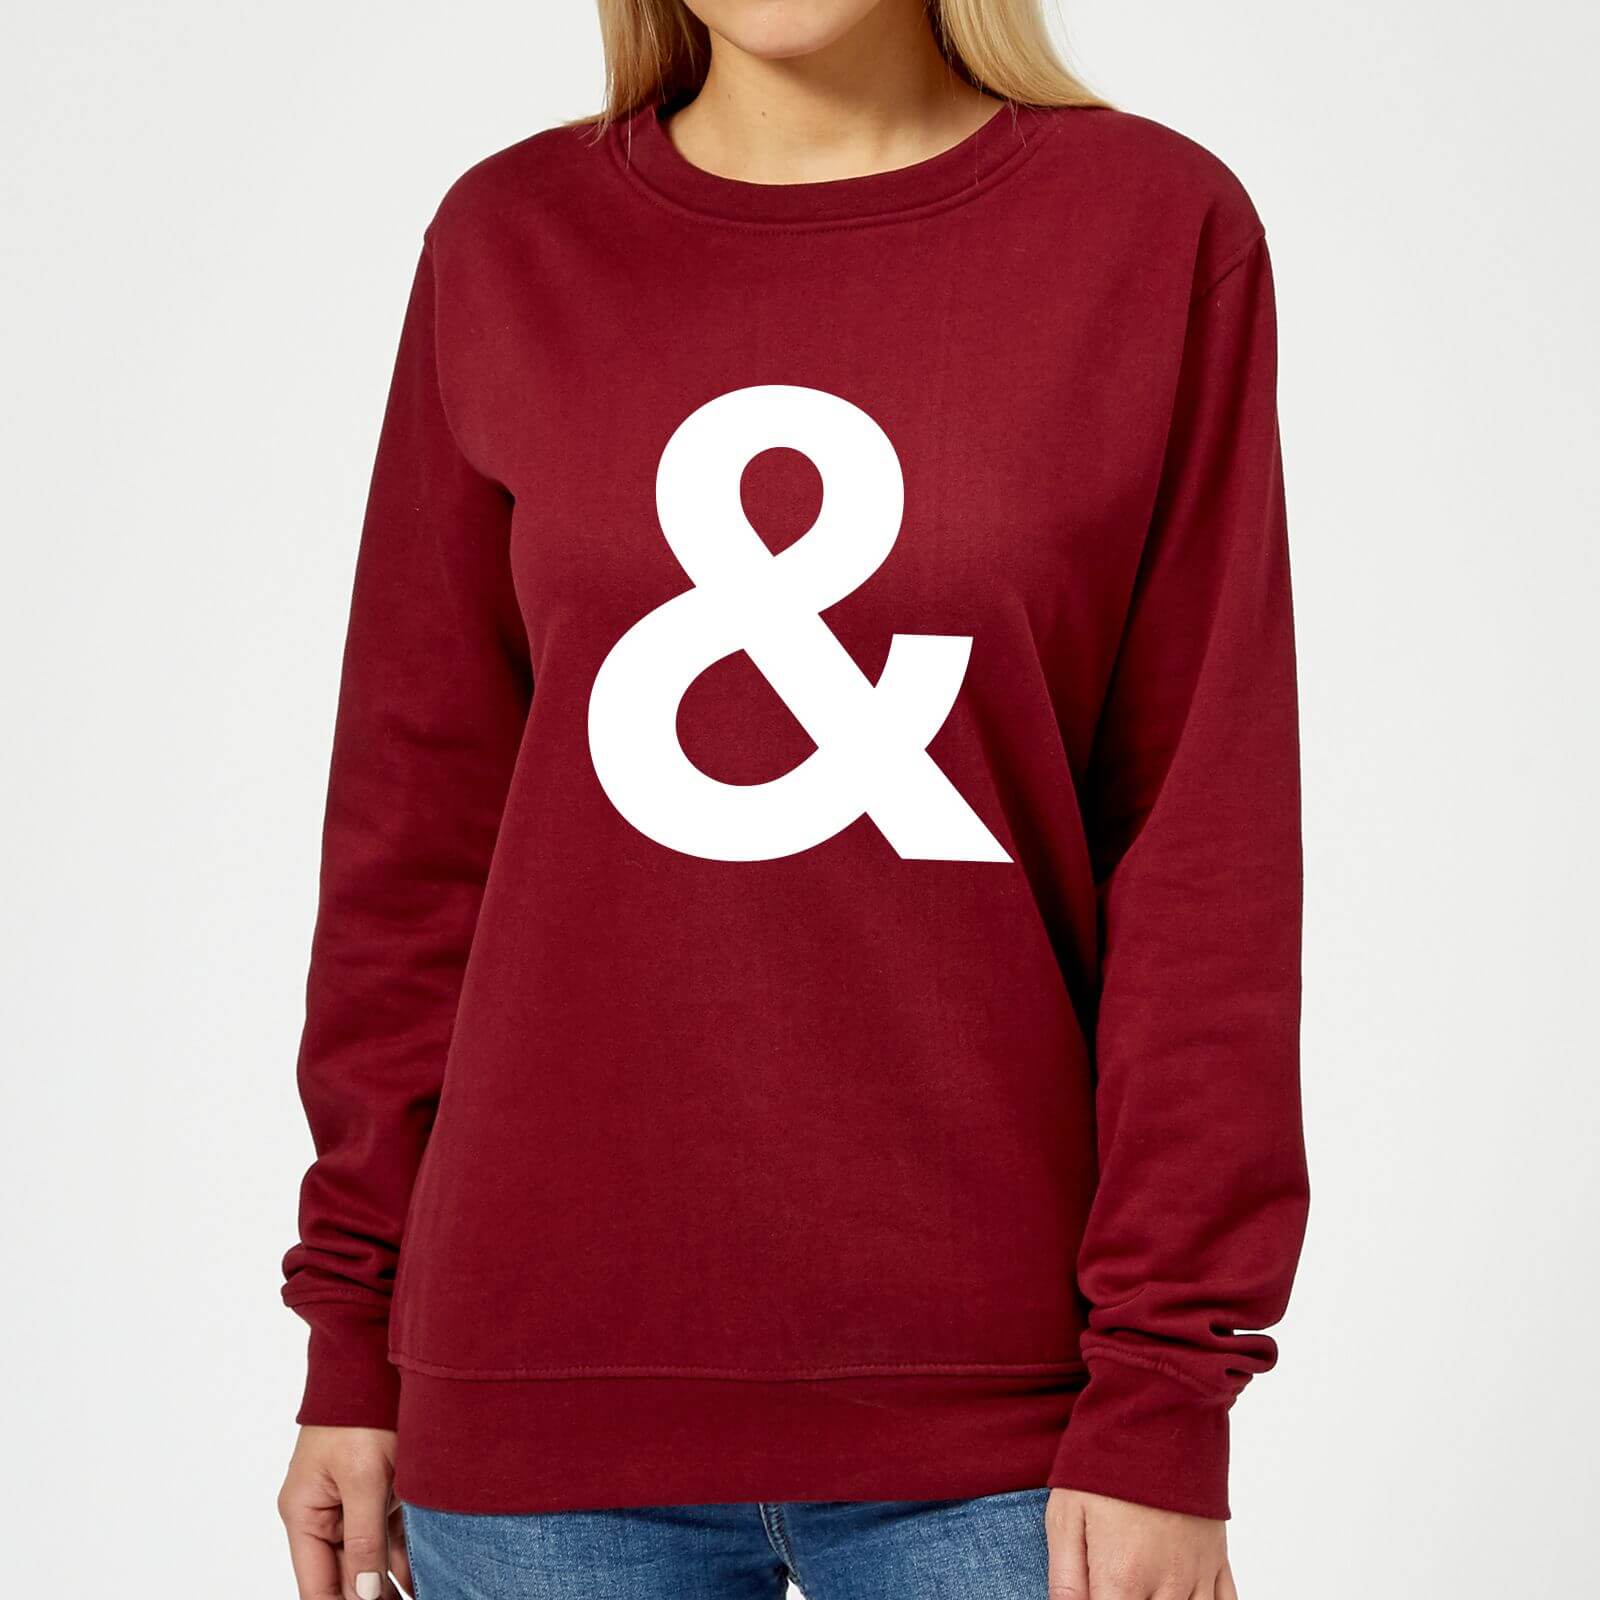 The Motivated Type & Women's Sweatshirt - Burgundy - XS - Burgundy